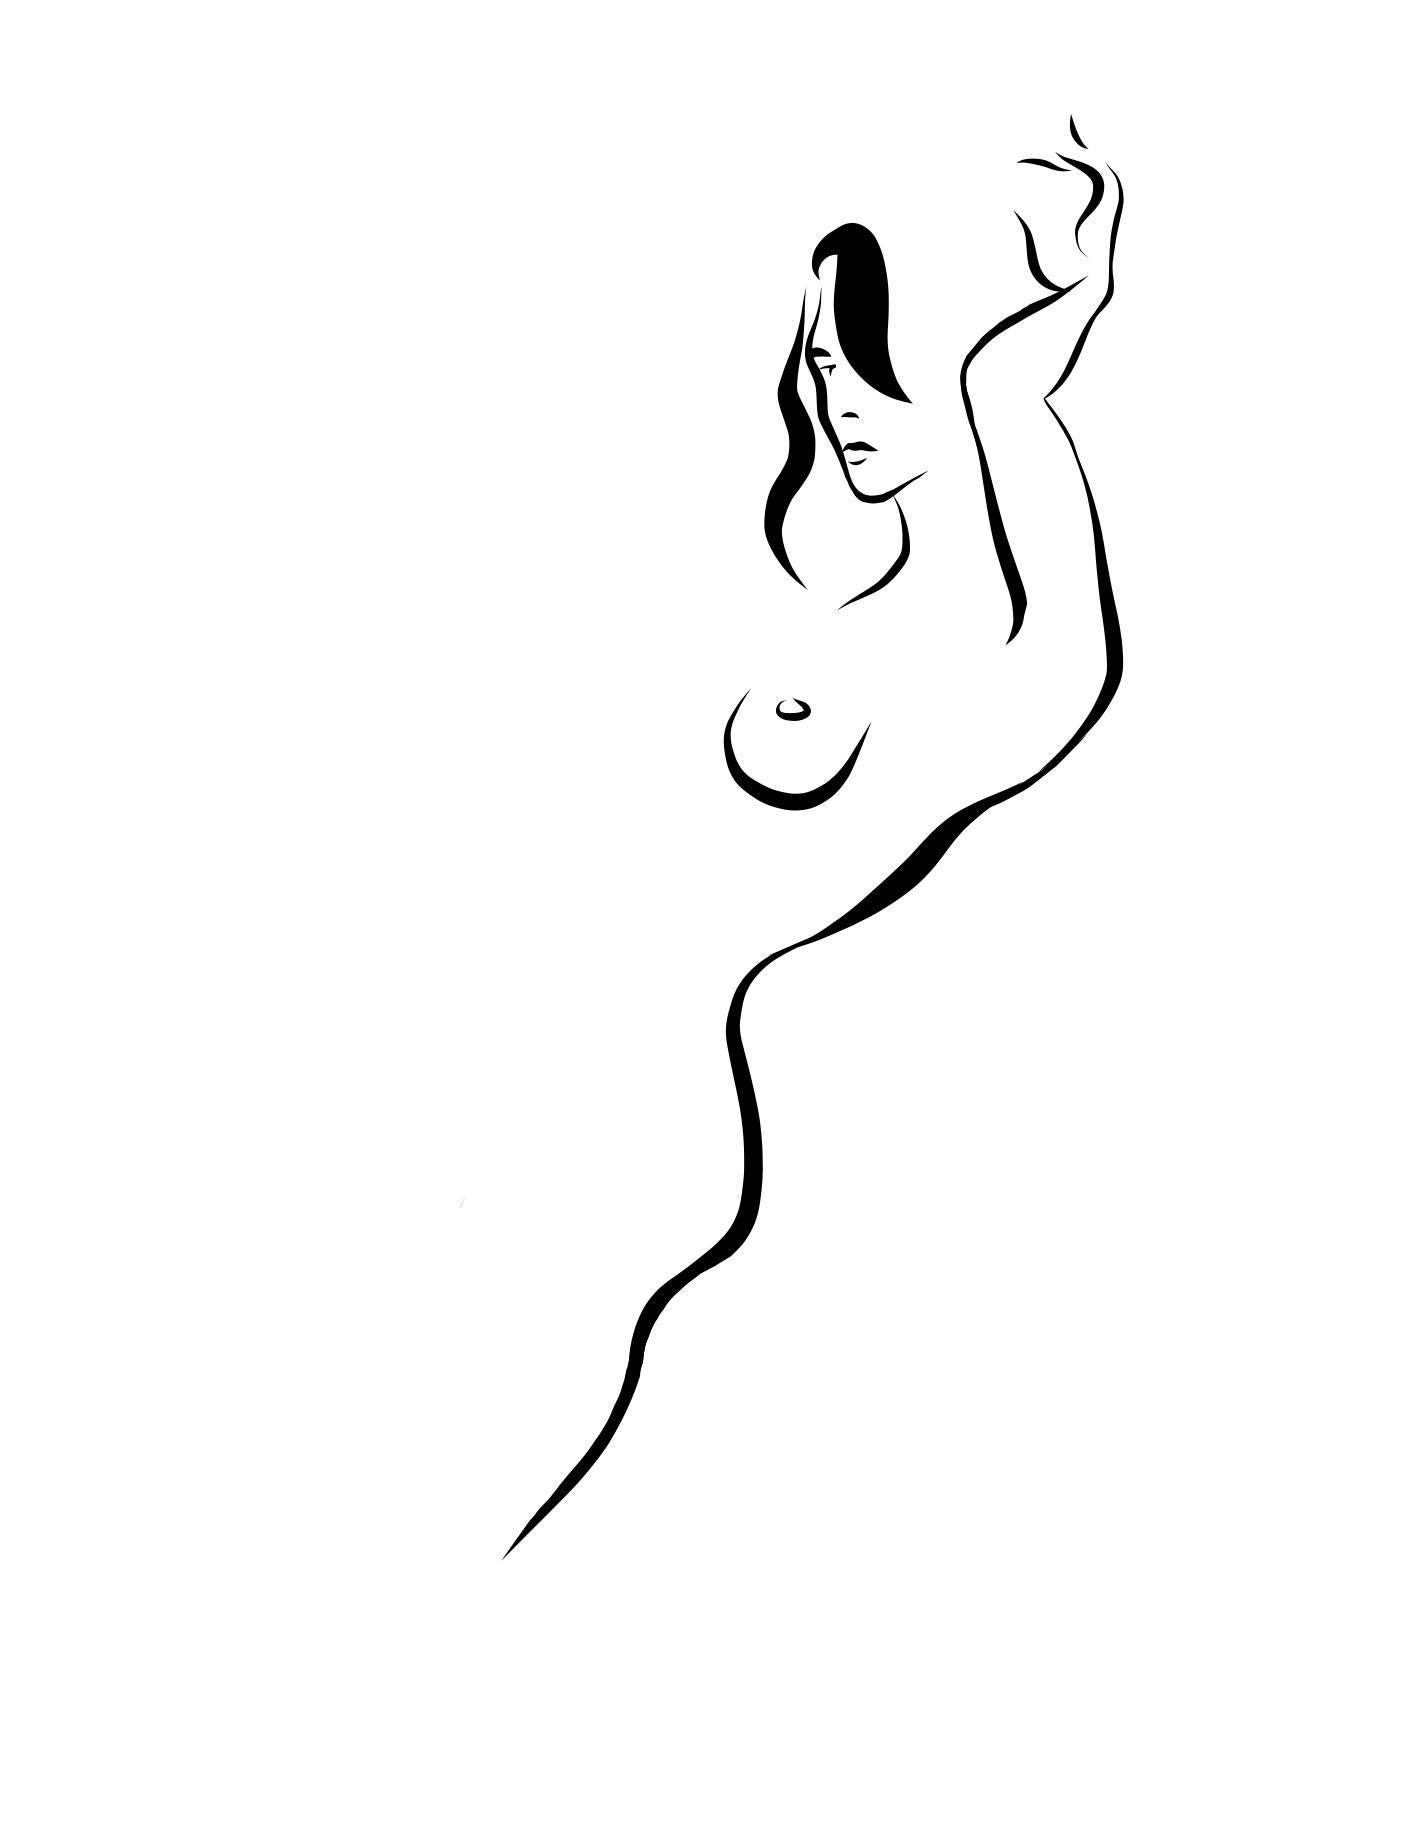 Michael Binkley Nude Print - Haiku #8, 1/50 - Digital Vector Drawing B&W Leaning Female Nude Woman Figure